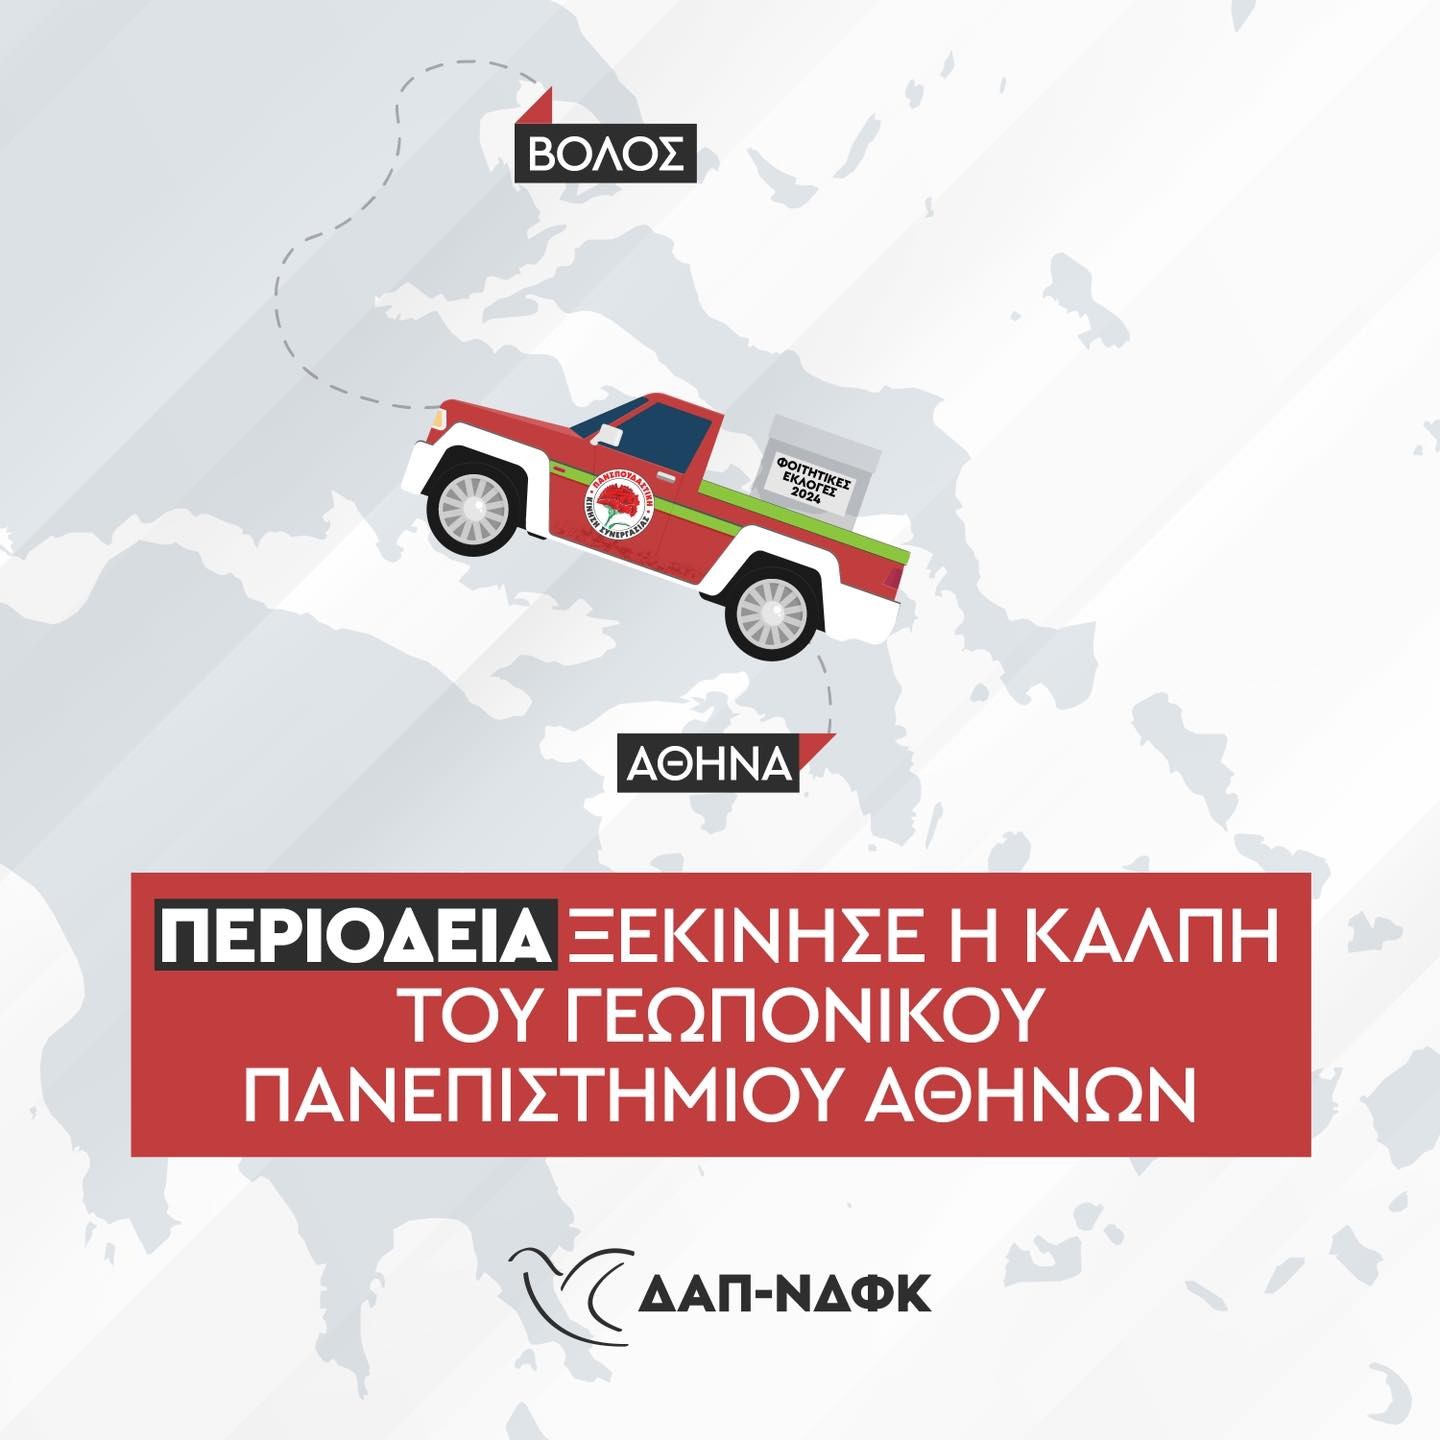 ΔΑΠ: Περιοδεία ξεκίνησε η κάλπη του Γεωπονικού Πανεπιστημίου Αθηνών